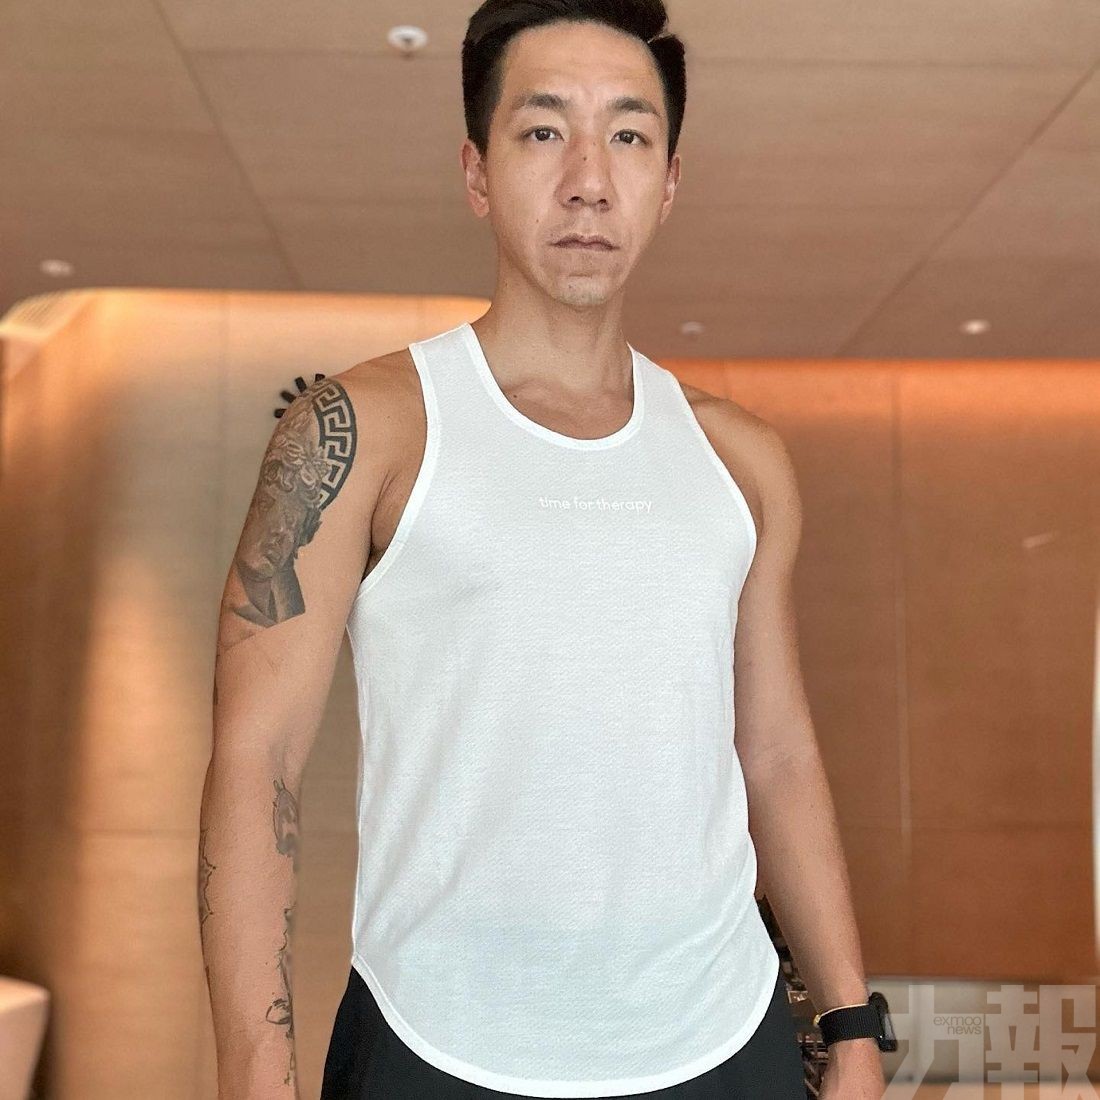 消息指柳俊江燒炭自殺終年42歲